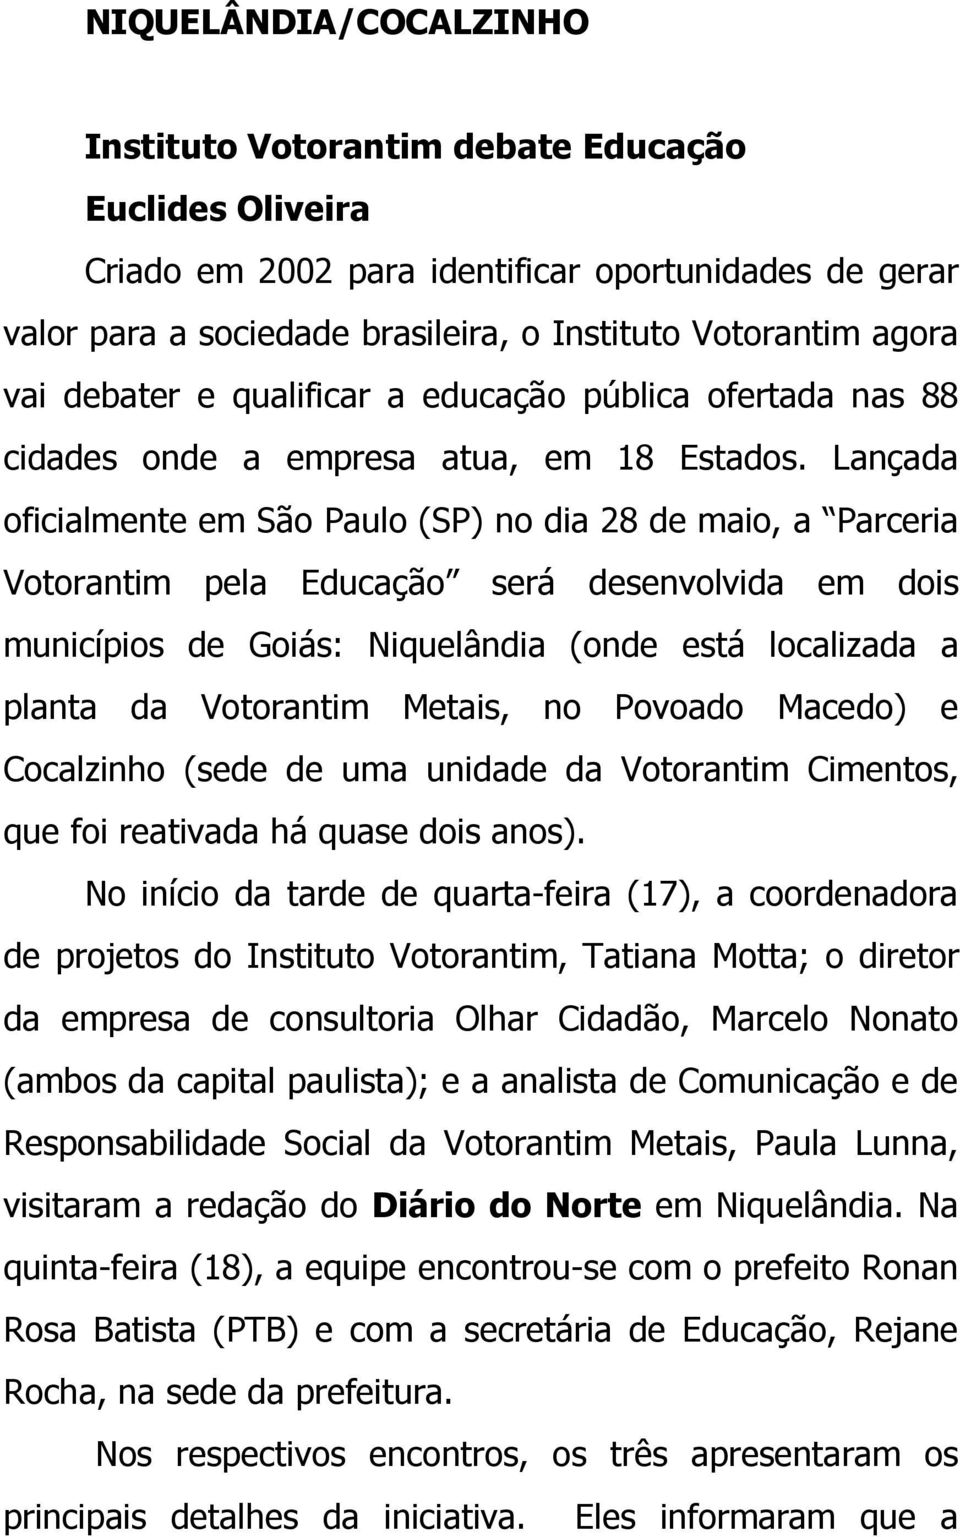 Lançada oficialmente em São Paulo (SP) no dia 28 de maio, a Parceria Votorantim pela Educação será desenvolvida em dois municípios de Goiás: Niquelândia (onde está localizada a planta da Votorantim